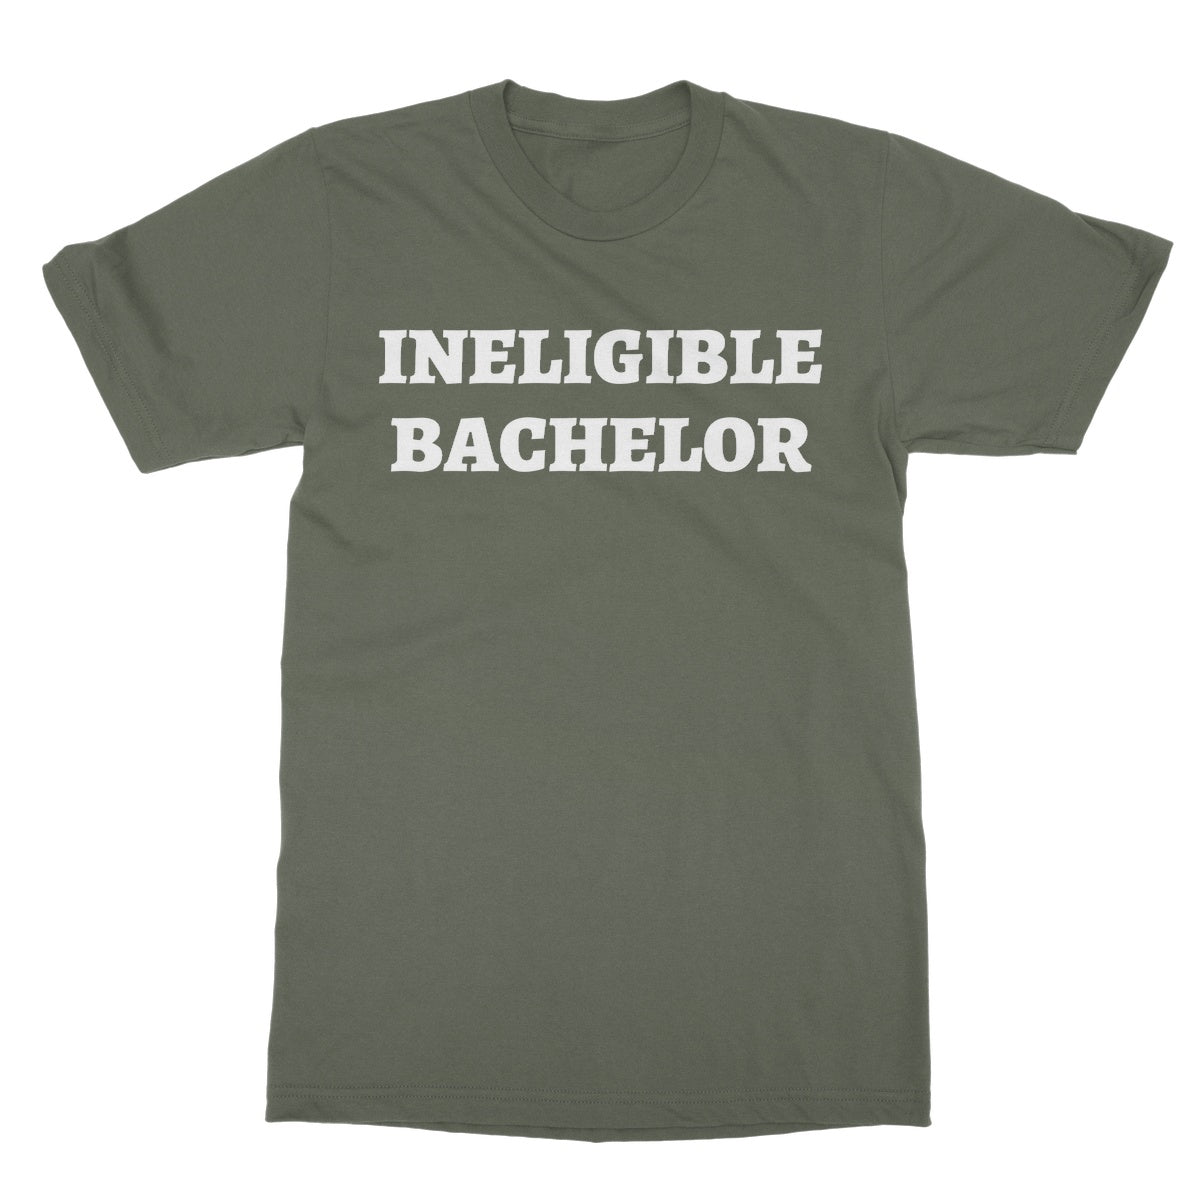 ineligible bachelor t shirt green